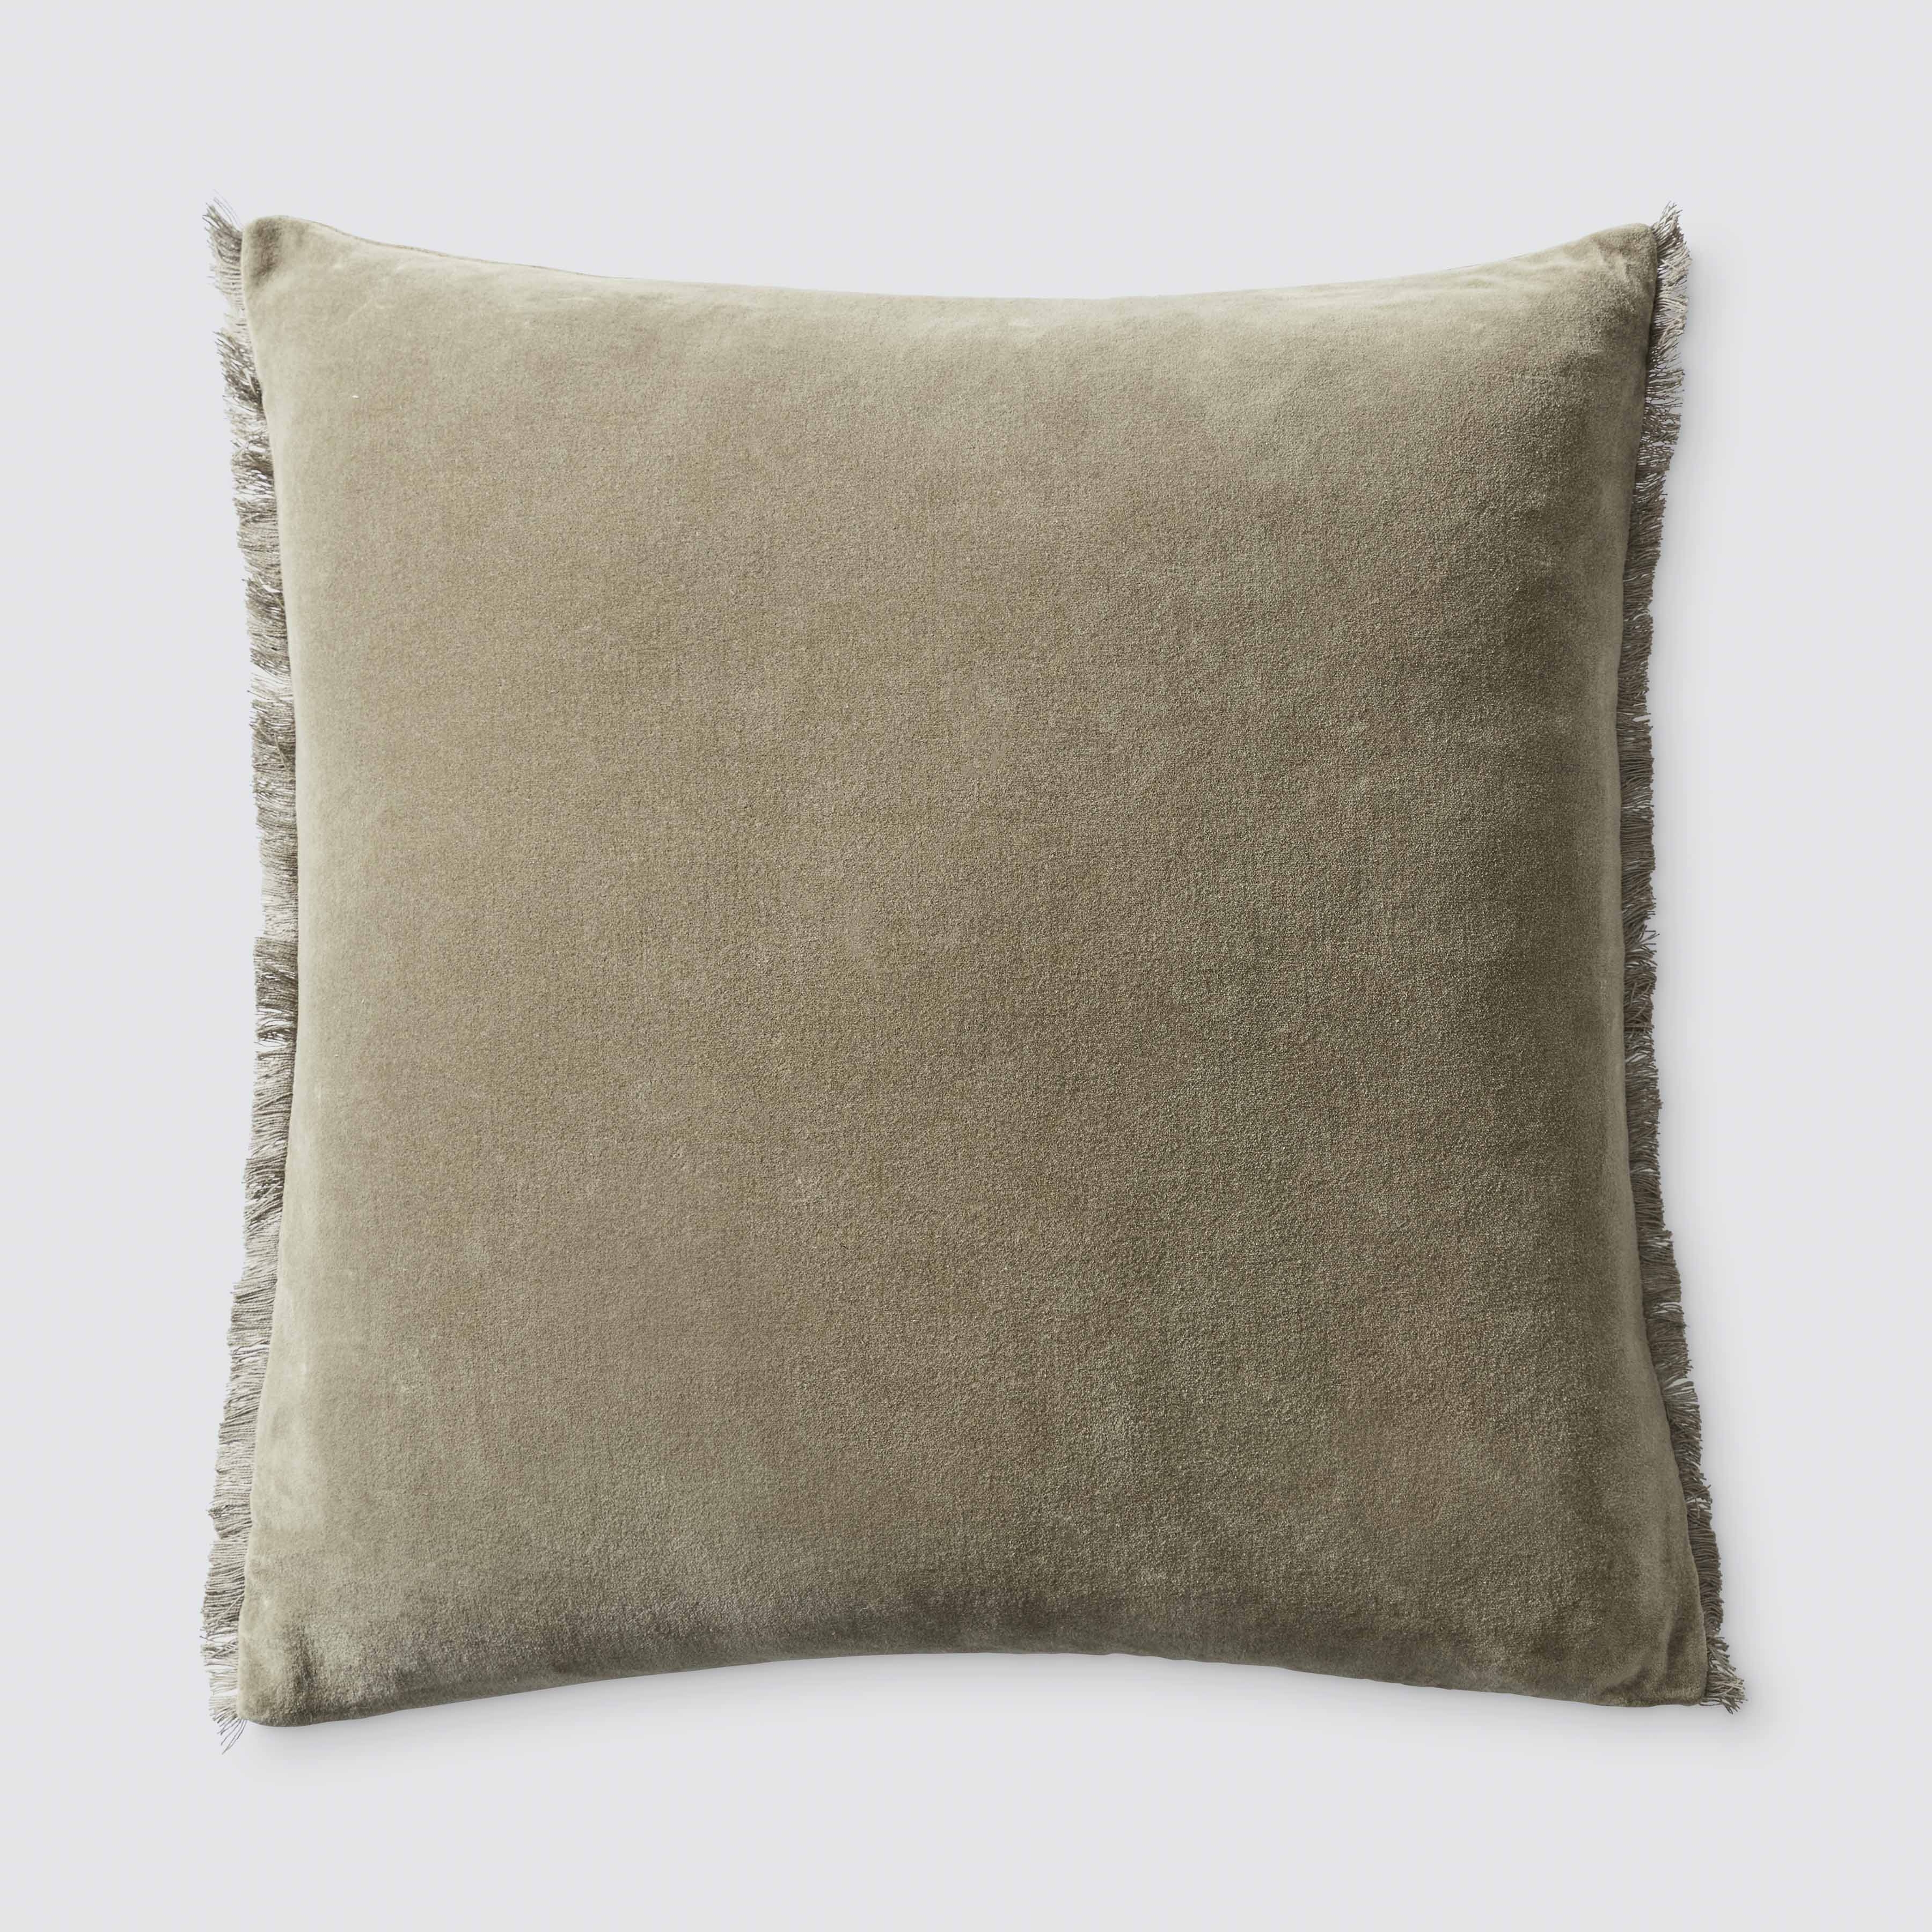 The Citizenry Naveta Velvet Pillow | 18" x 18" | Camel - Image 1